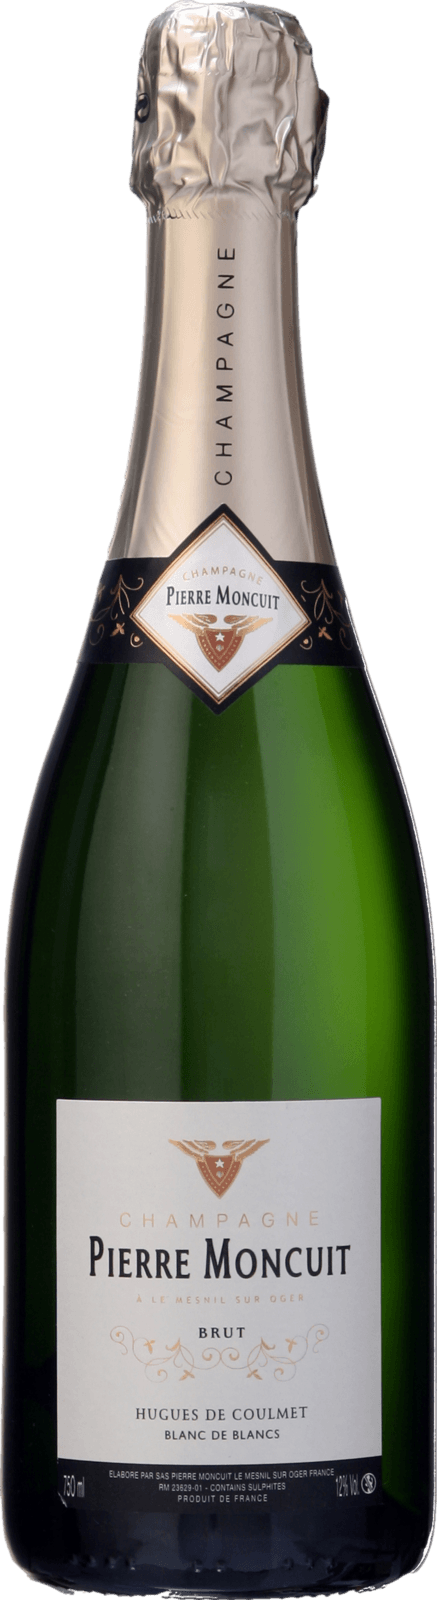 Champagne Pierre Moncuit Hugues de Coulmet Blanc de Blancs